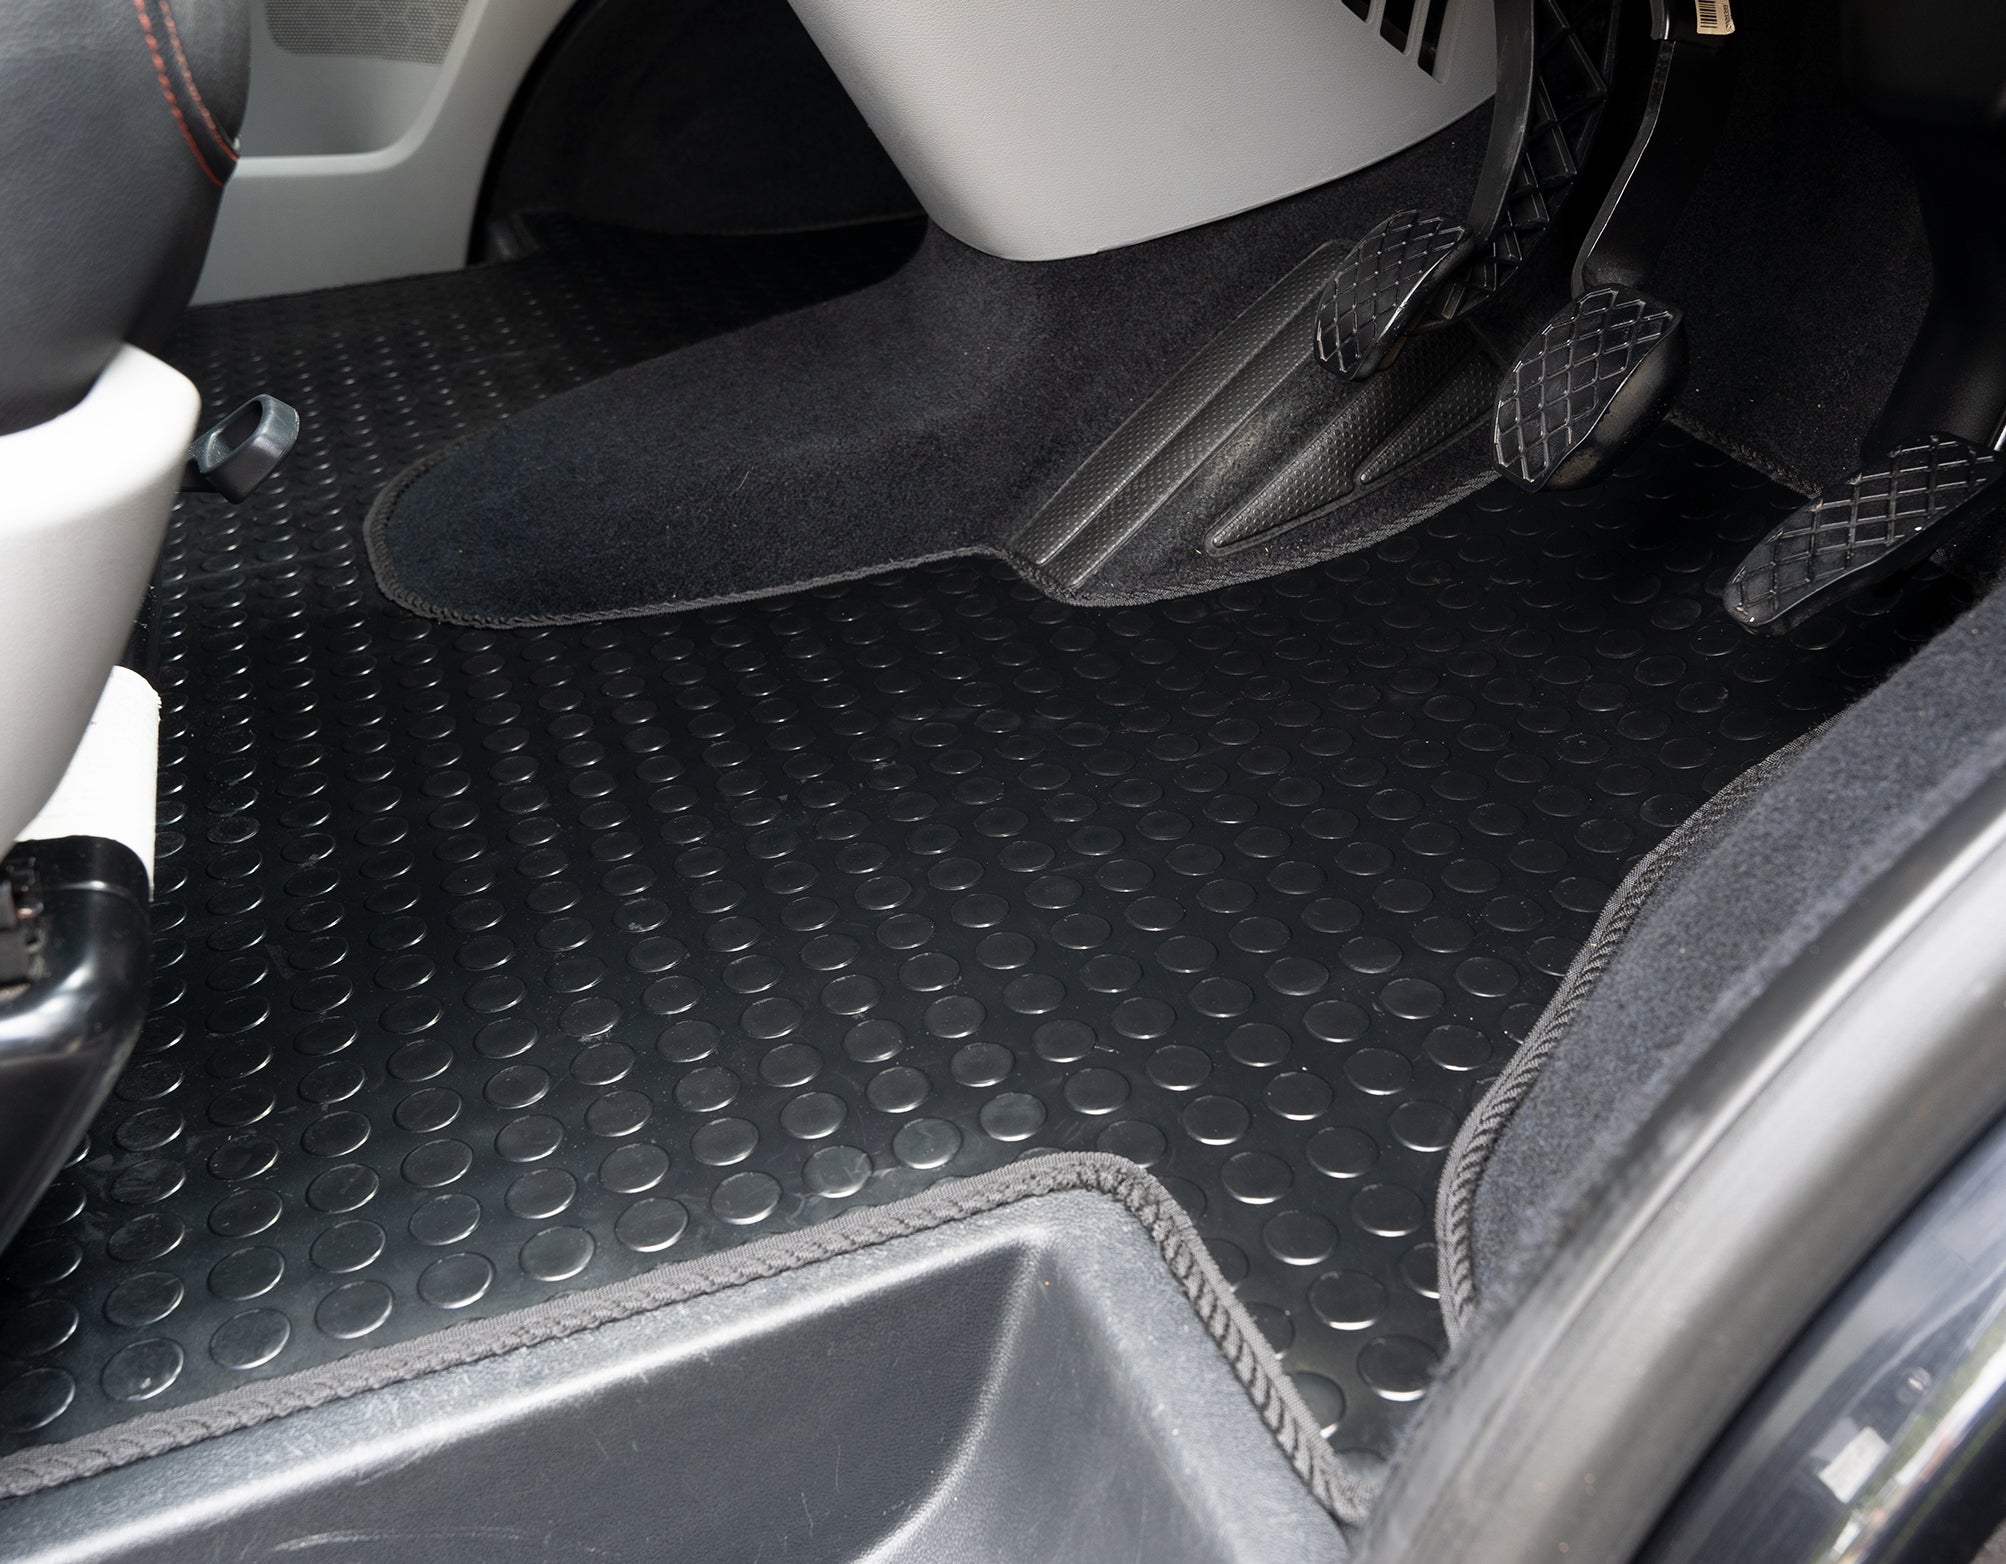 DRIVN TPE Car Floor Mats for Volkswagen Polo/Skoda Rapid-Beige